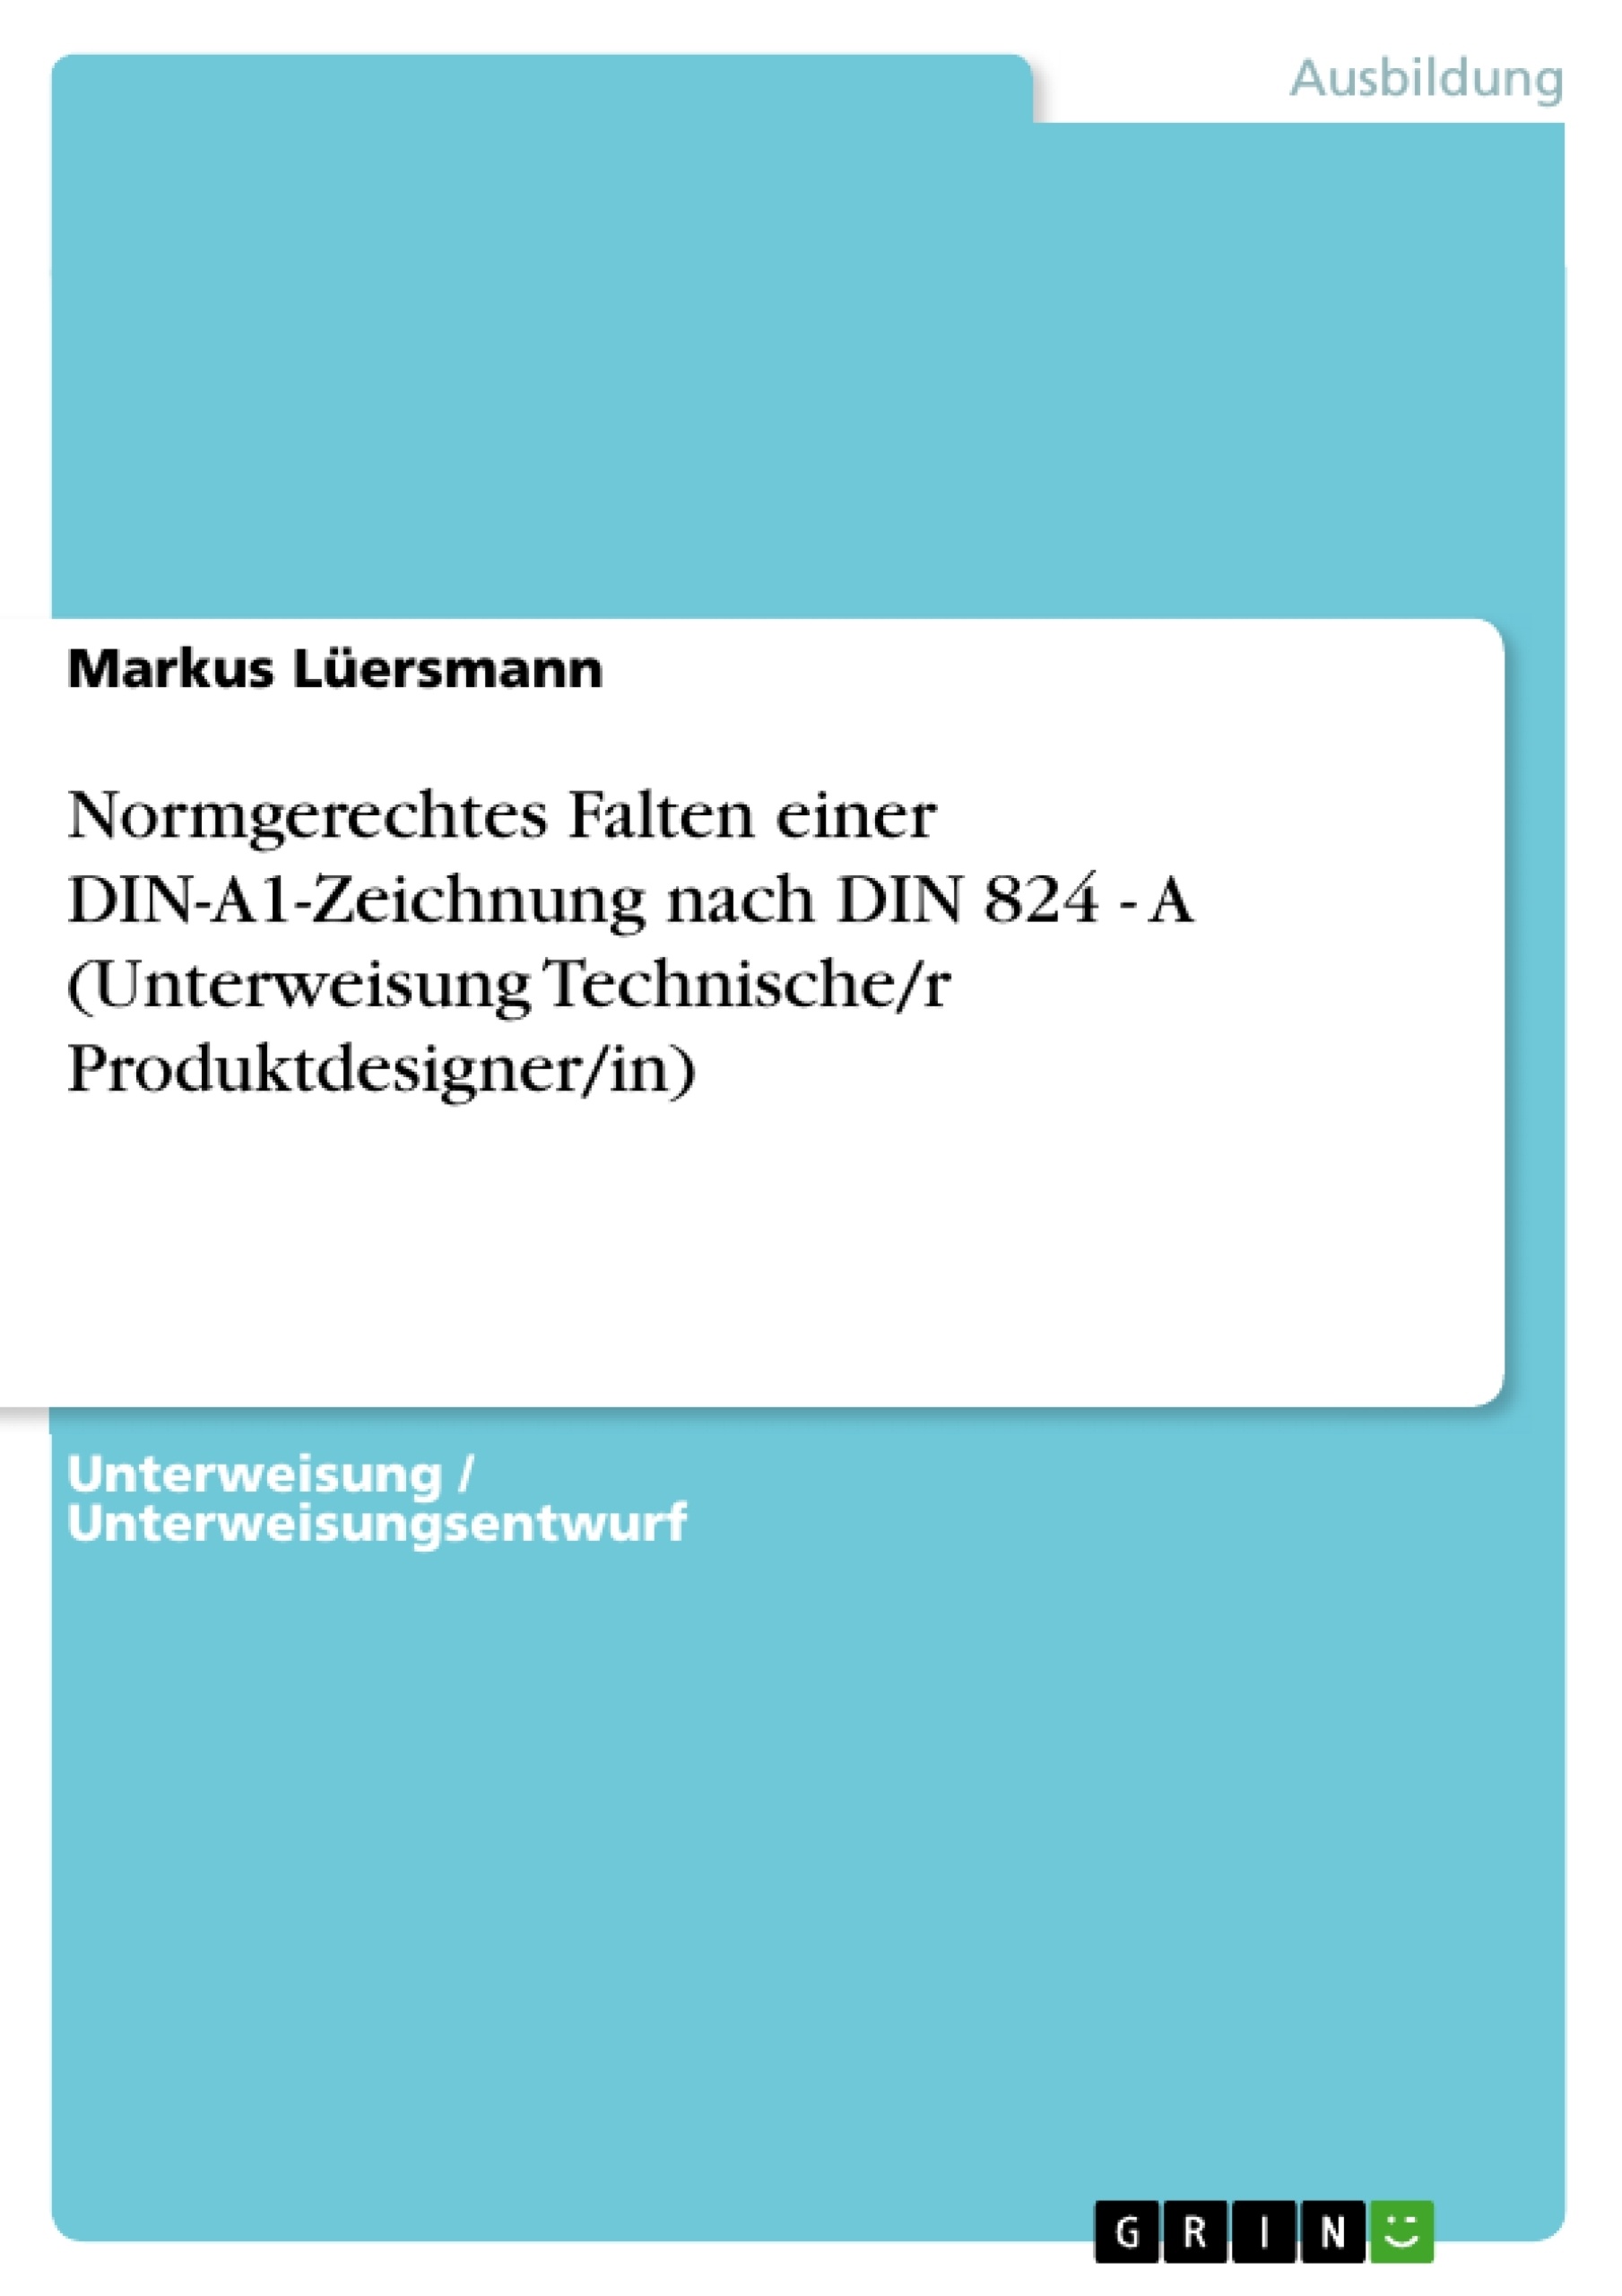 Título: Normgerechtes Falten einer DIN-A1-Zeichnung nach DIN 824 - A (Unterweisung Technische/r Produktdesigner/in)